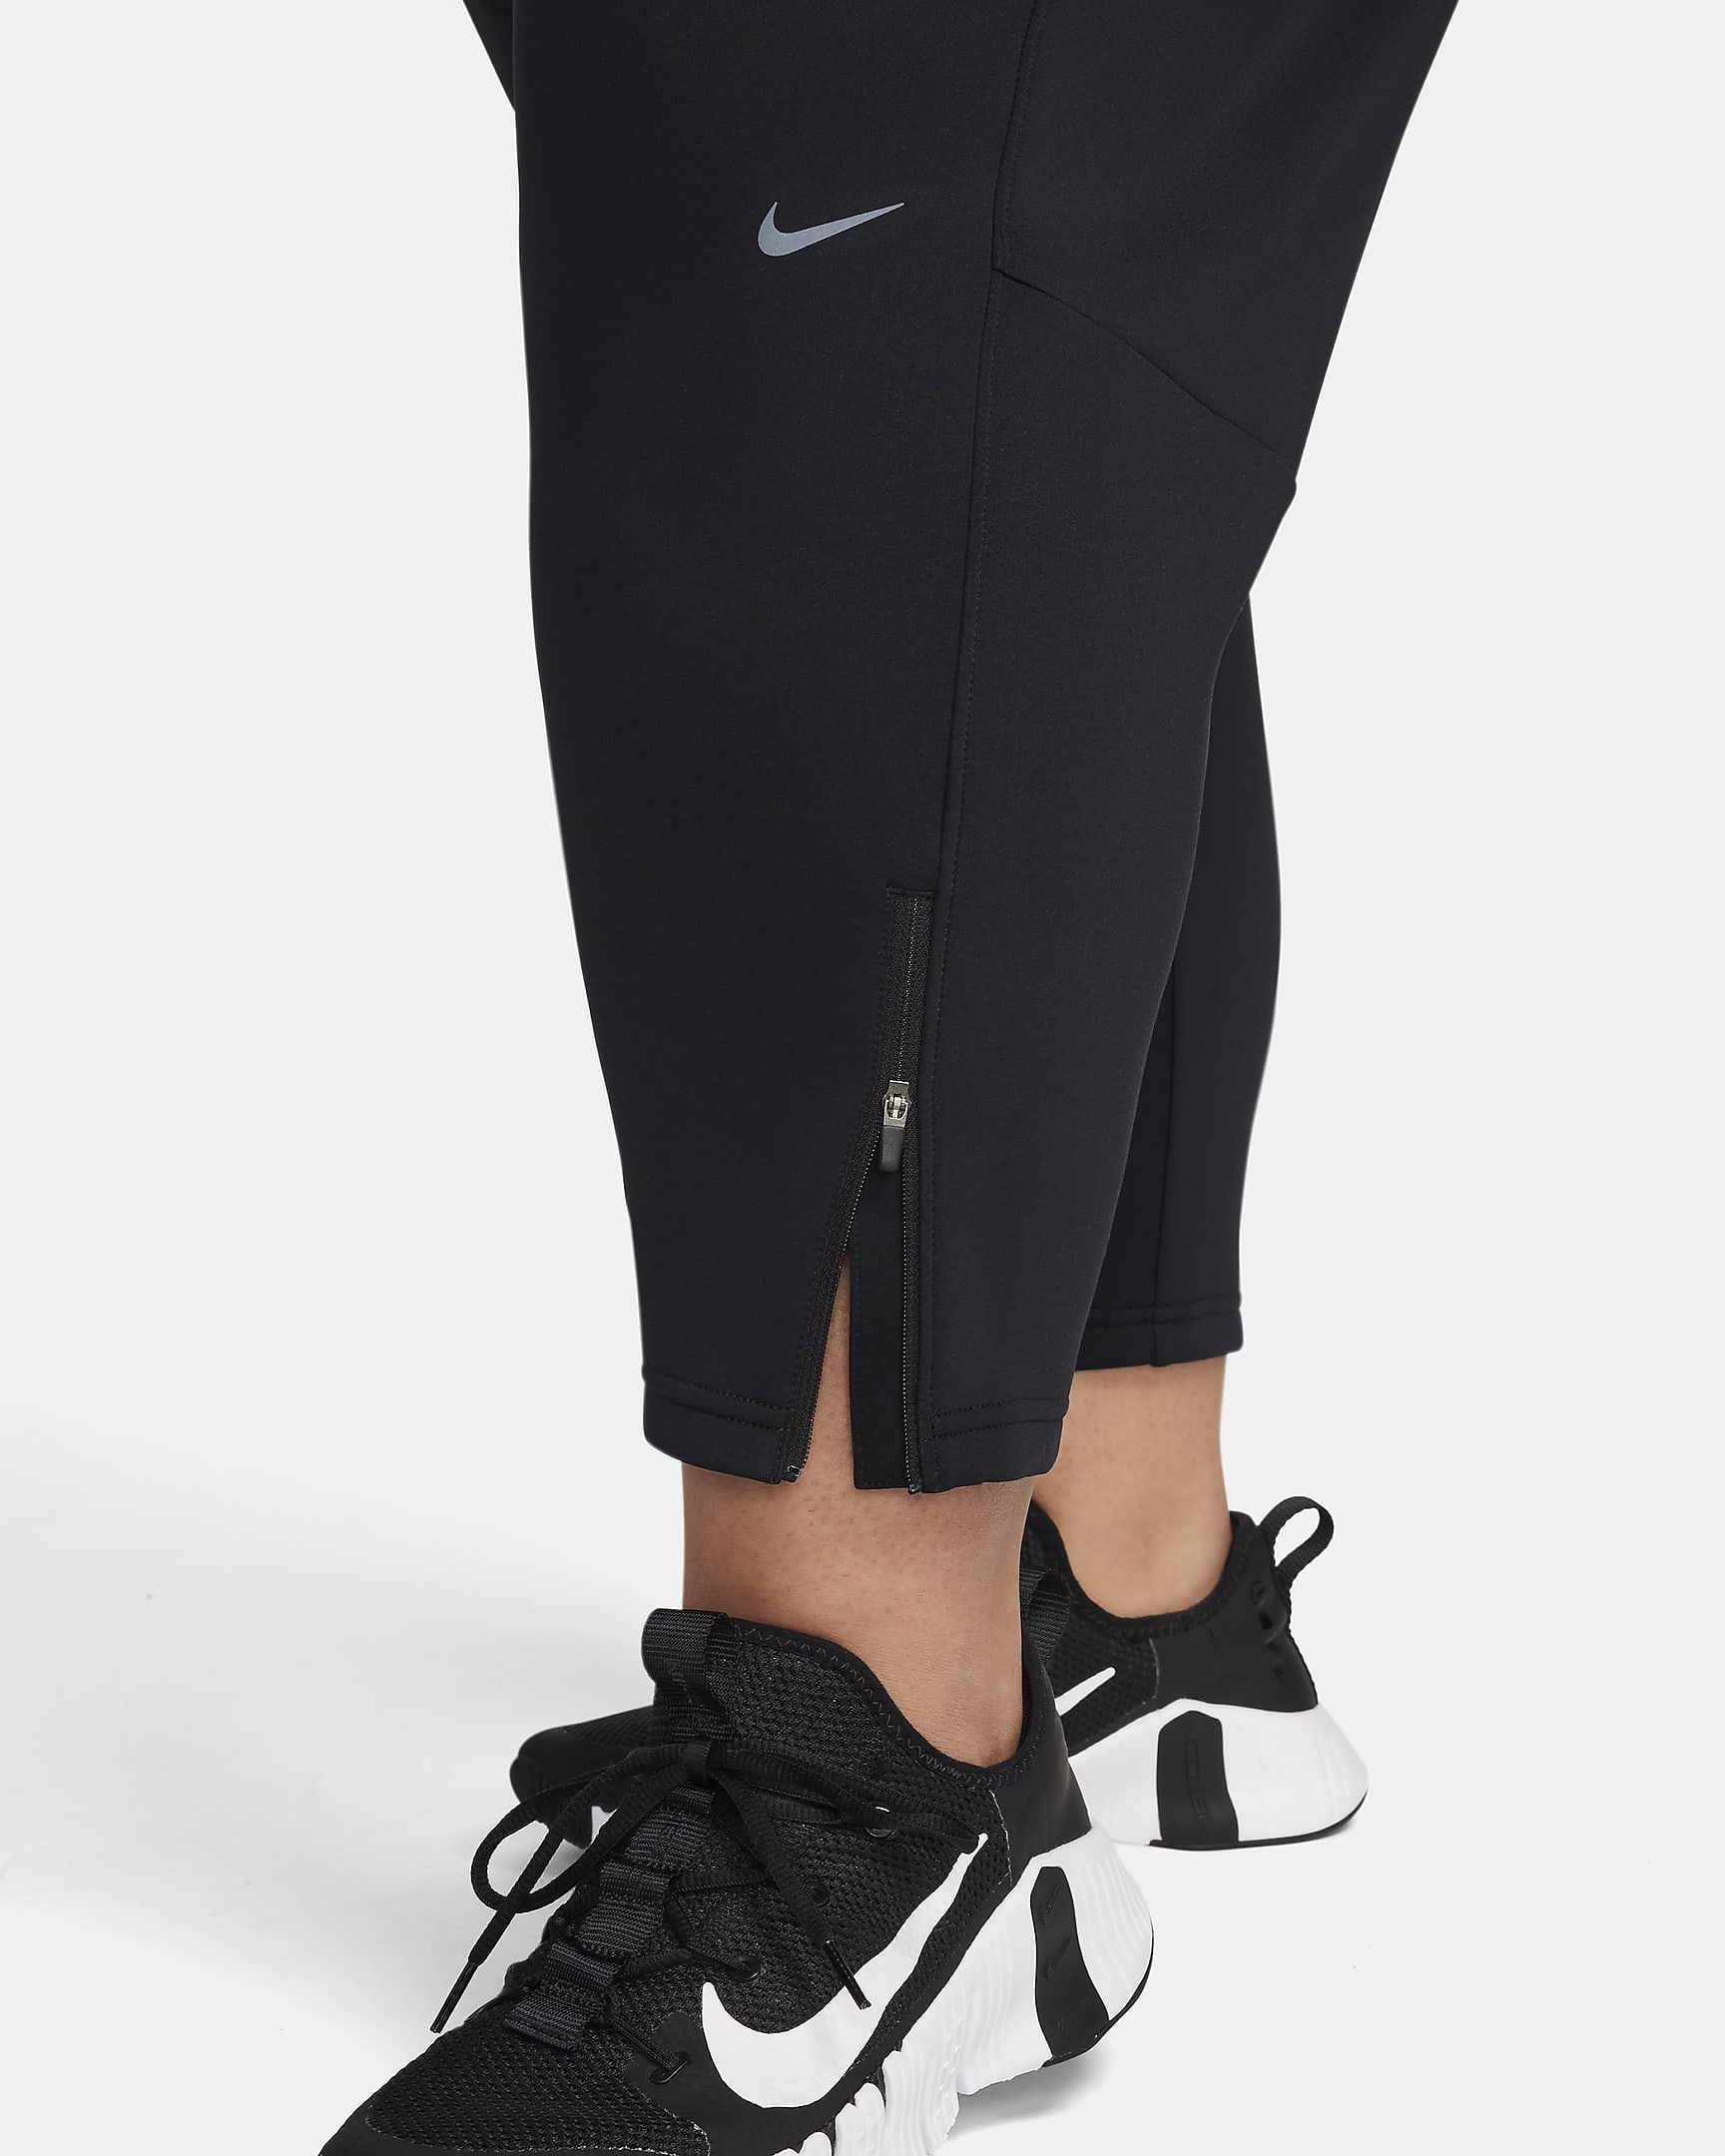 Nike Dri-FIT Prima Women's High-Waisted 7/8 Training Pants (Plus Size) - Black/Black